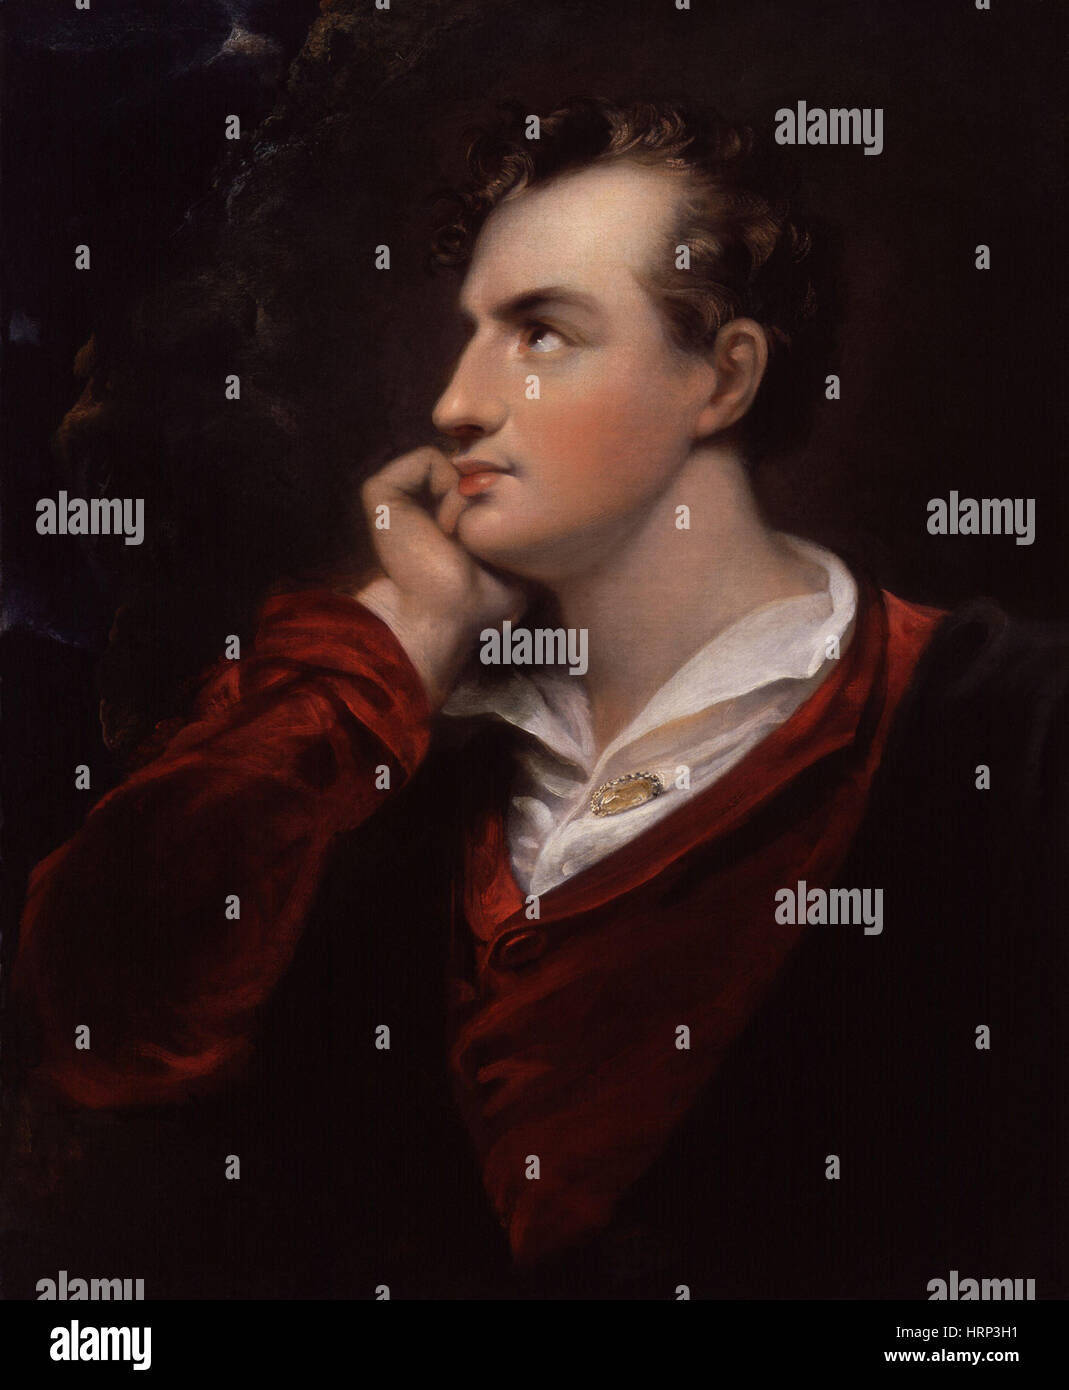 Lord Byron, poète romantique anglais Banque D'Images